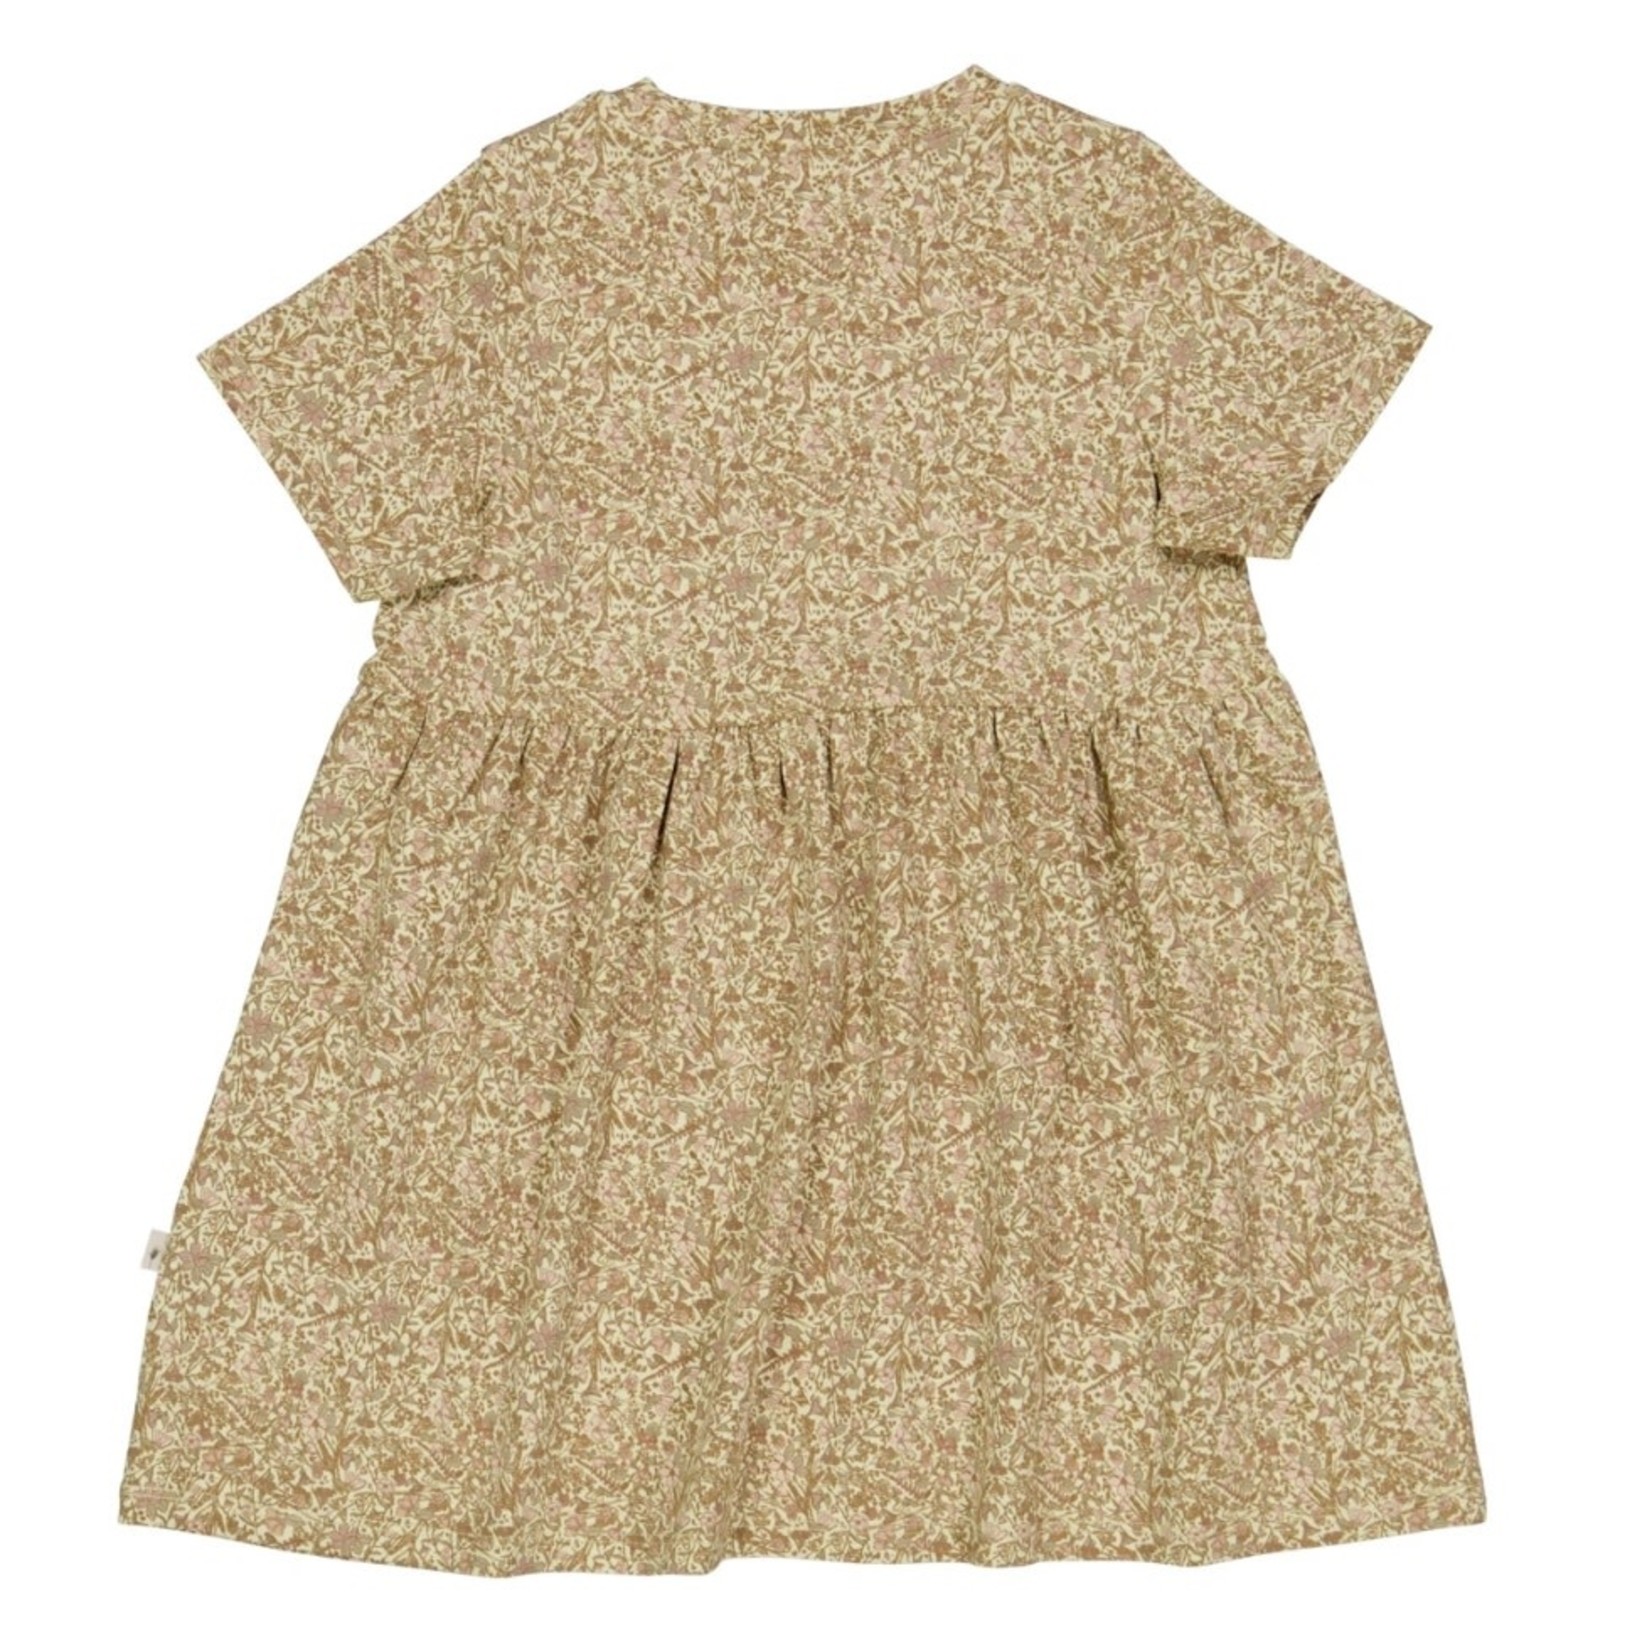 Wheat Wheat - Anna Jersey Dress